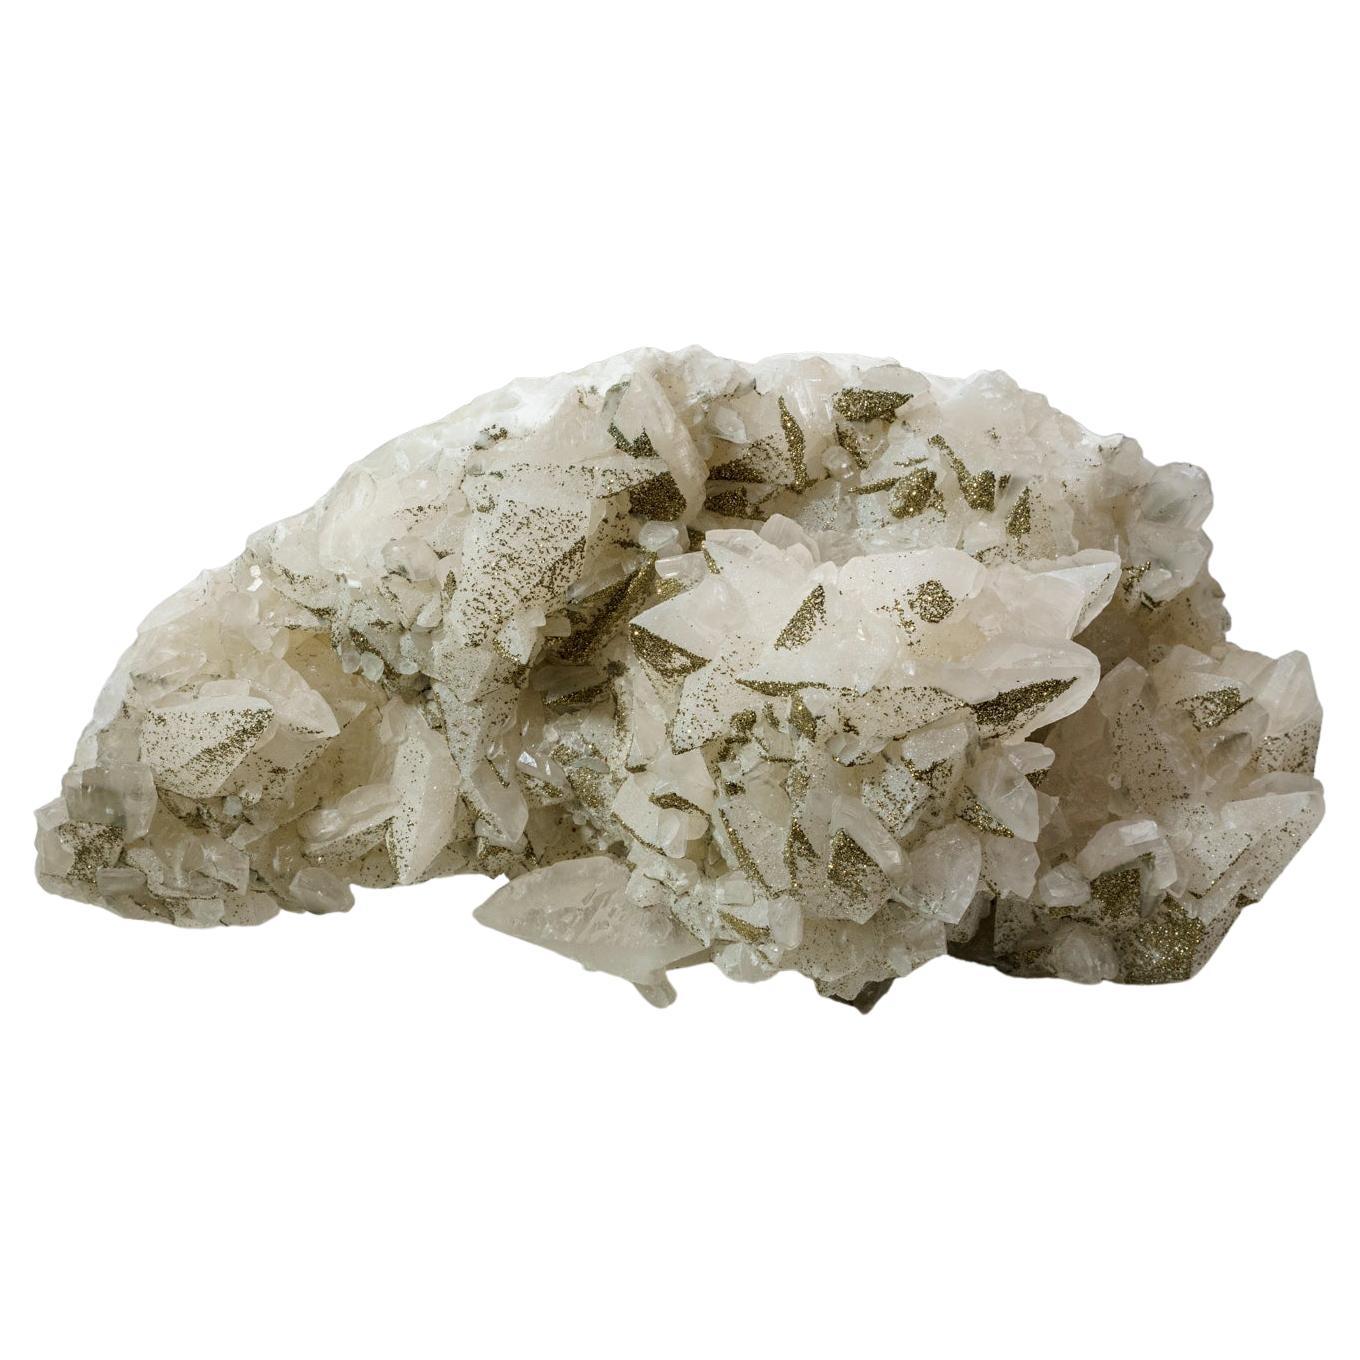 Chalcopyrite naturelle authentique en minéraux naturels sur cristaux de calcite de Chine